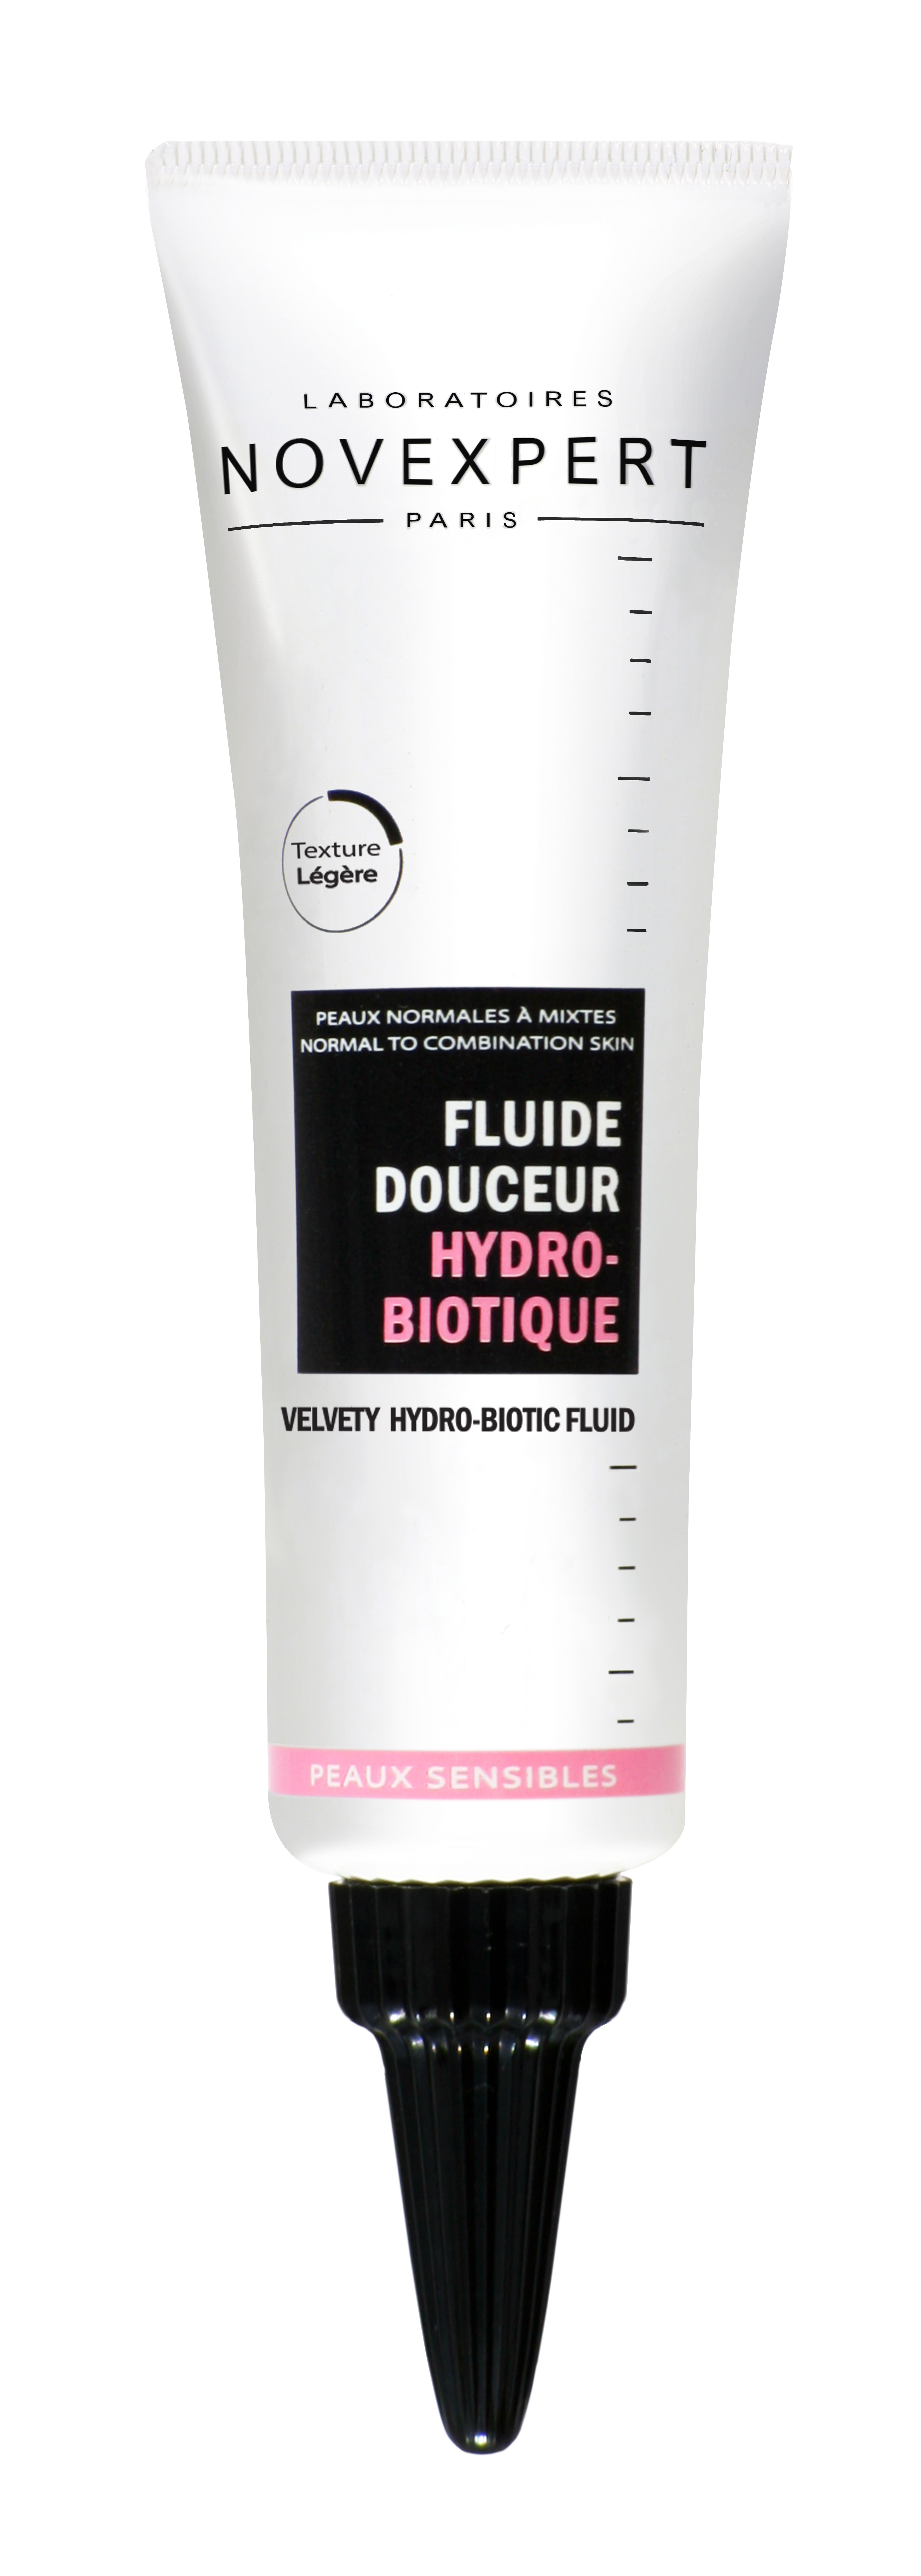 Fluide douceur HydroBio